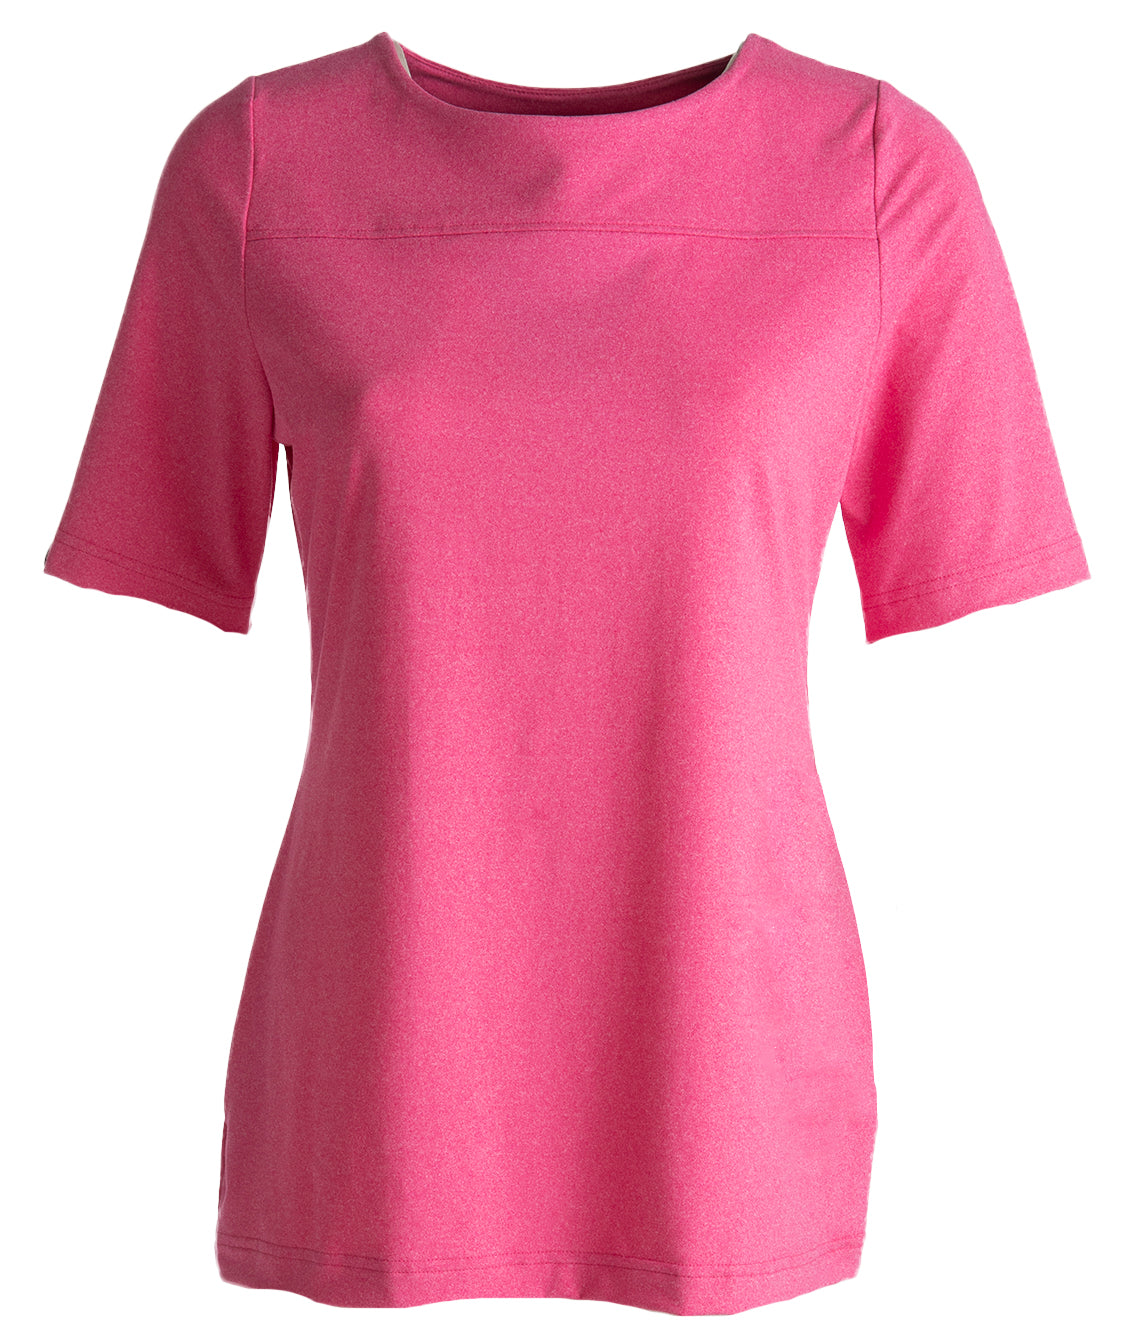 Terveydenhoidon naisten pinkki t-paita.